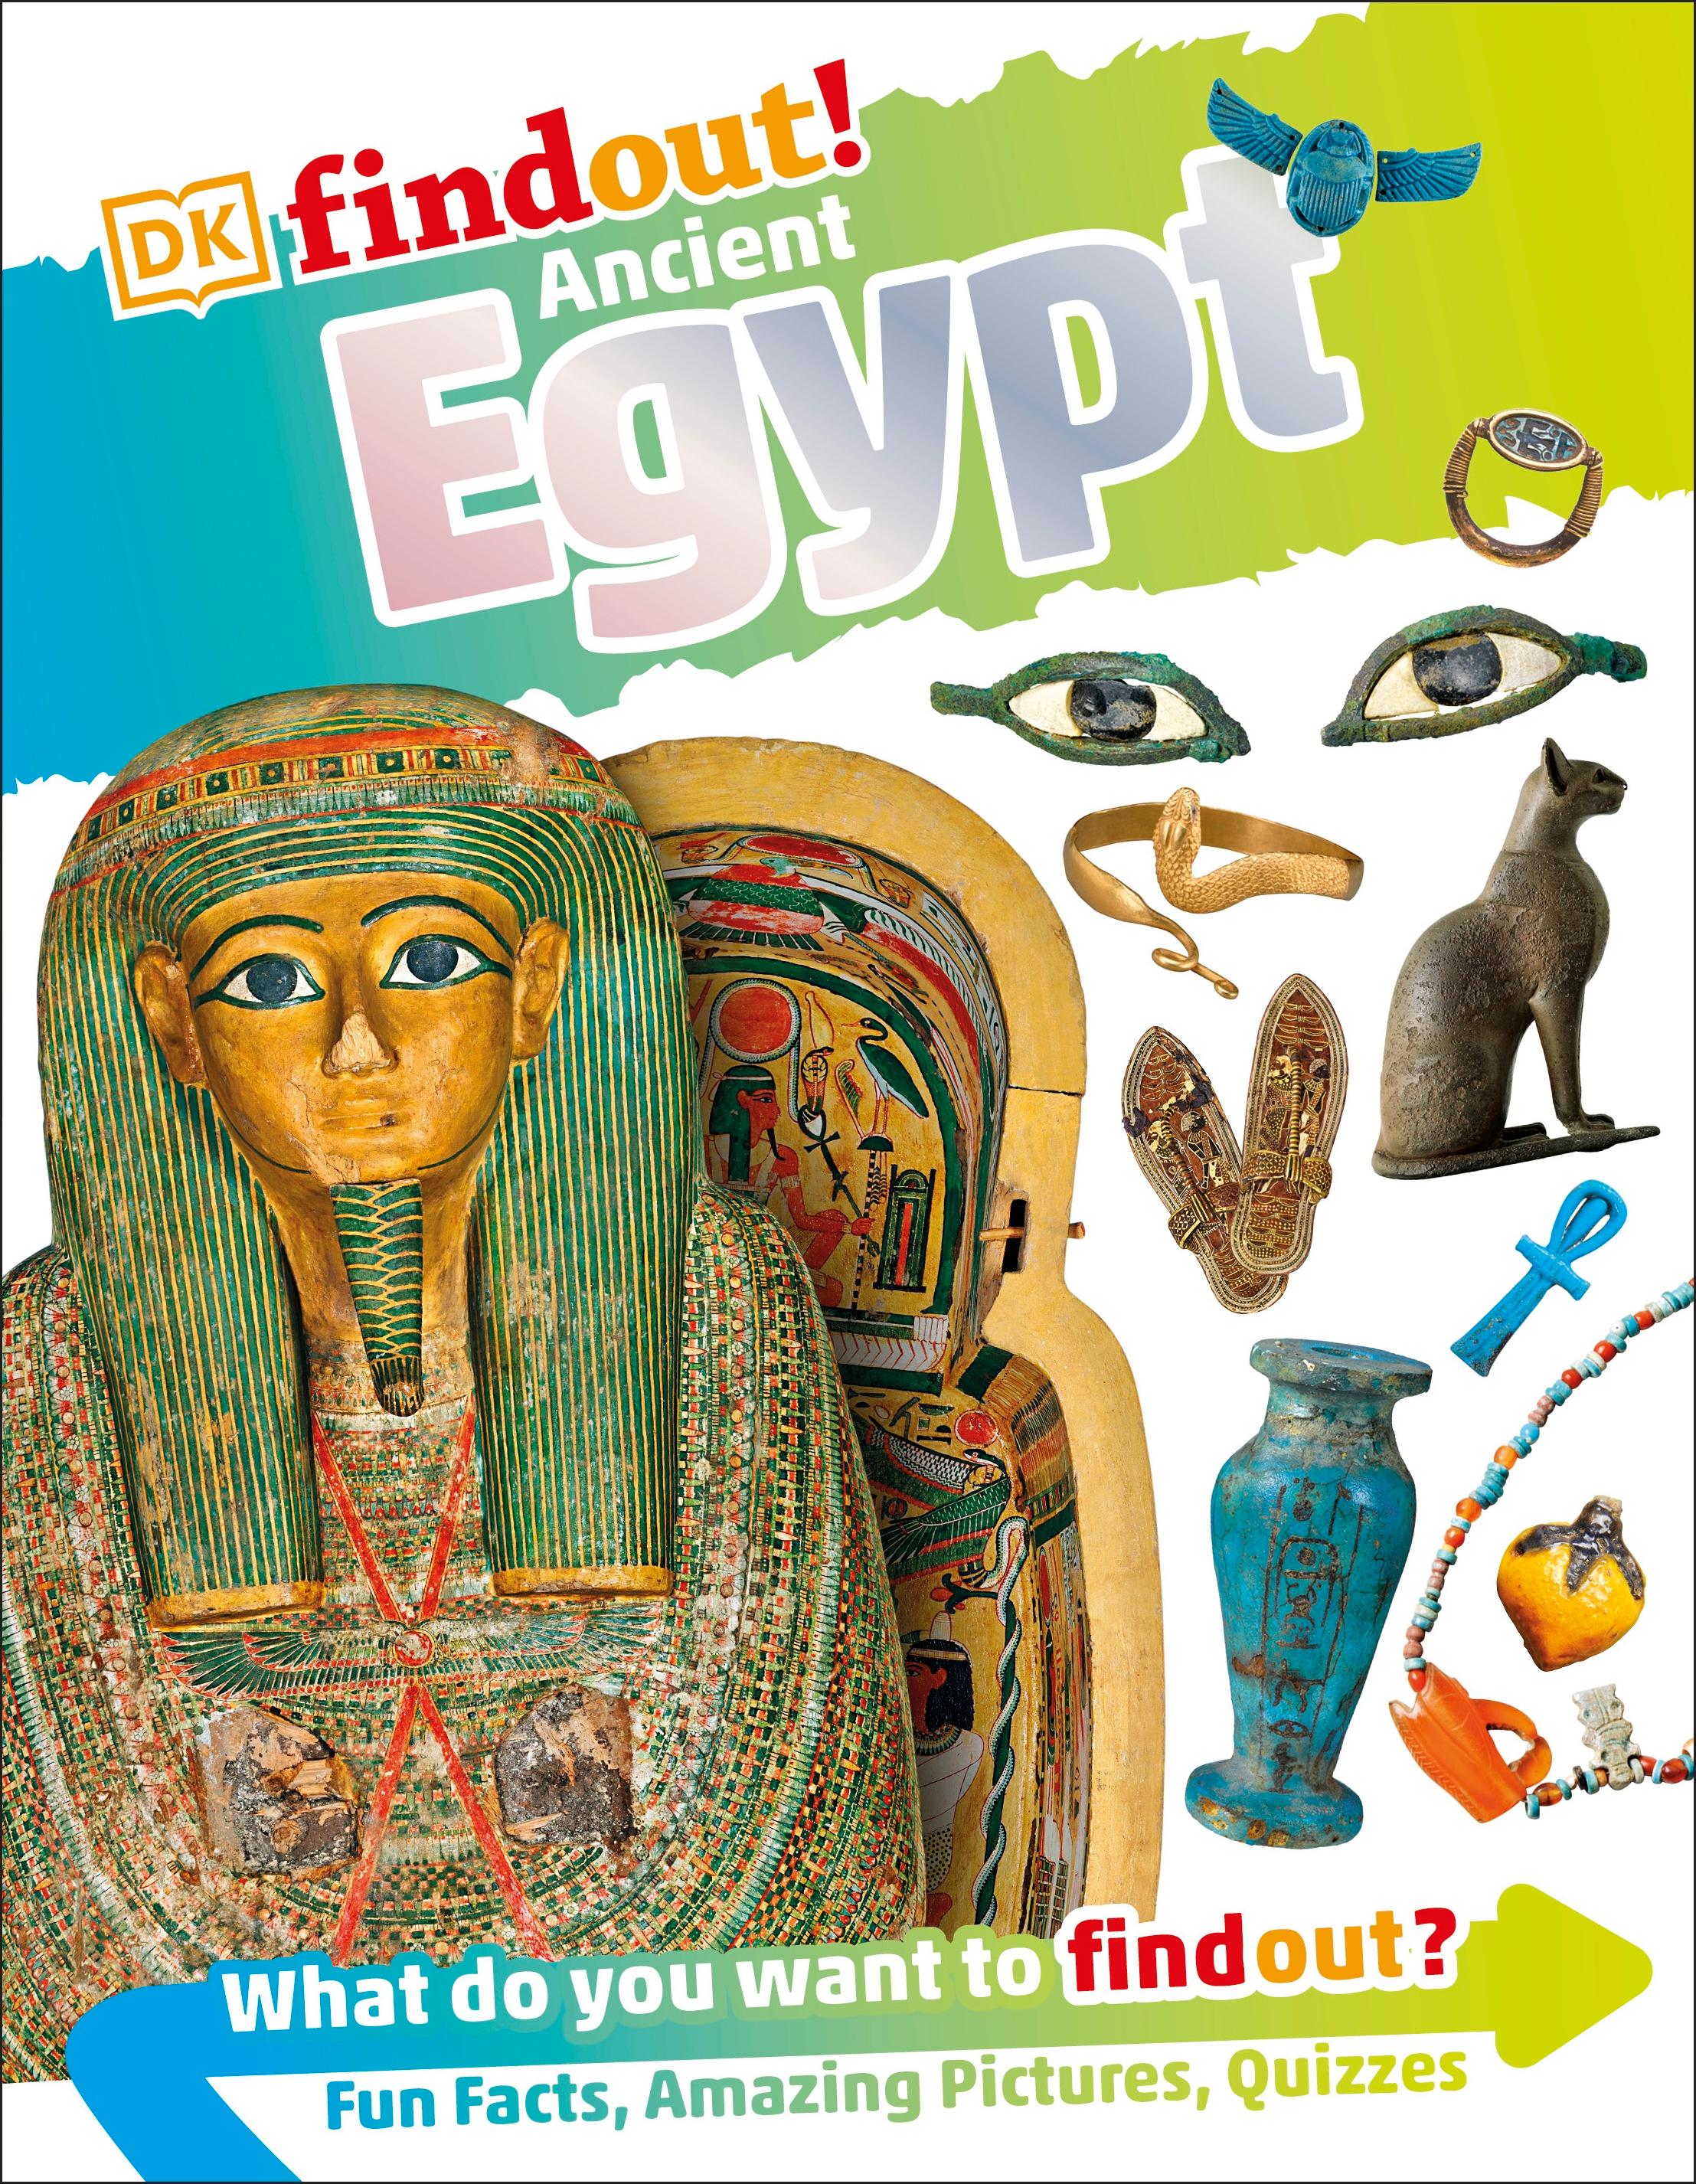 DKfindout! Ancient Egypt | DK | Taschenbuch | DK find out! | Englisch | 2017 | Dorling Kindersley Ltd | EAN 9780241282779 - DK